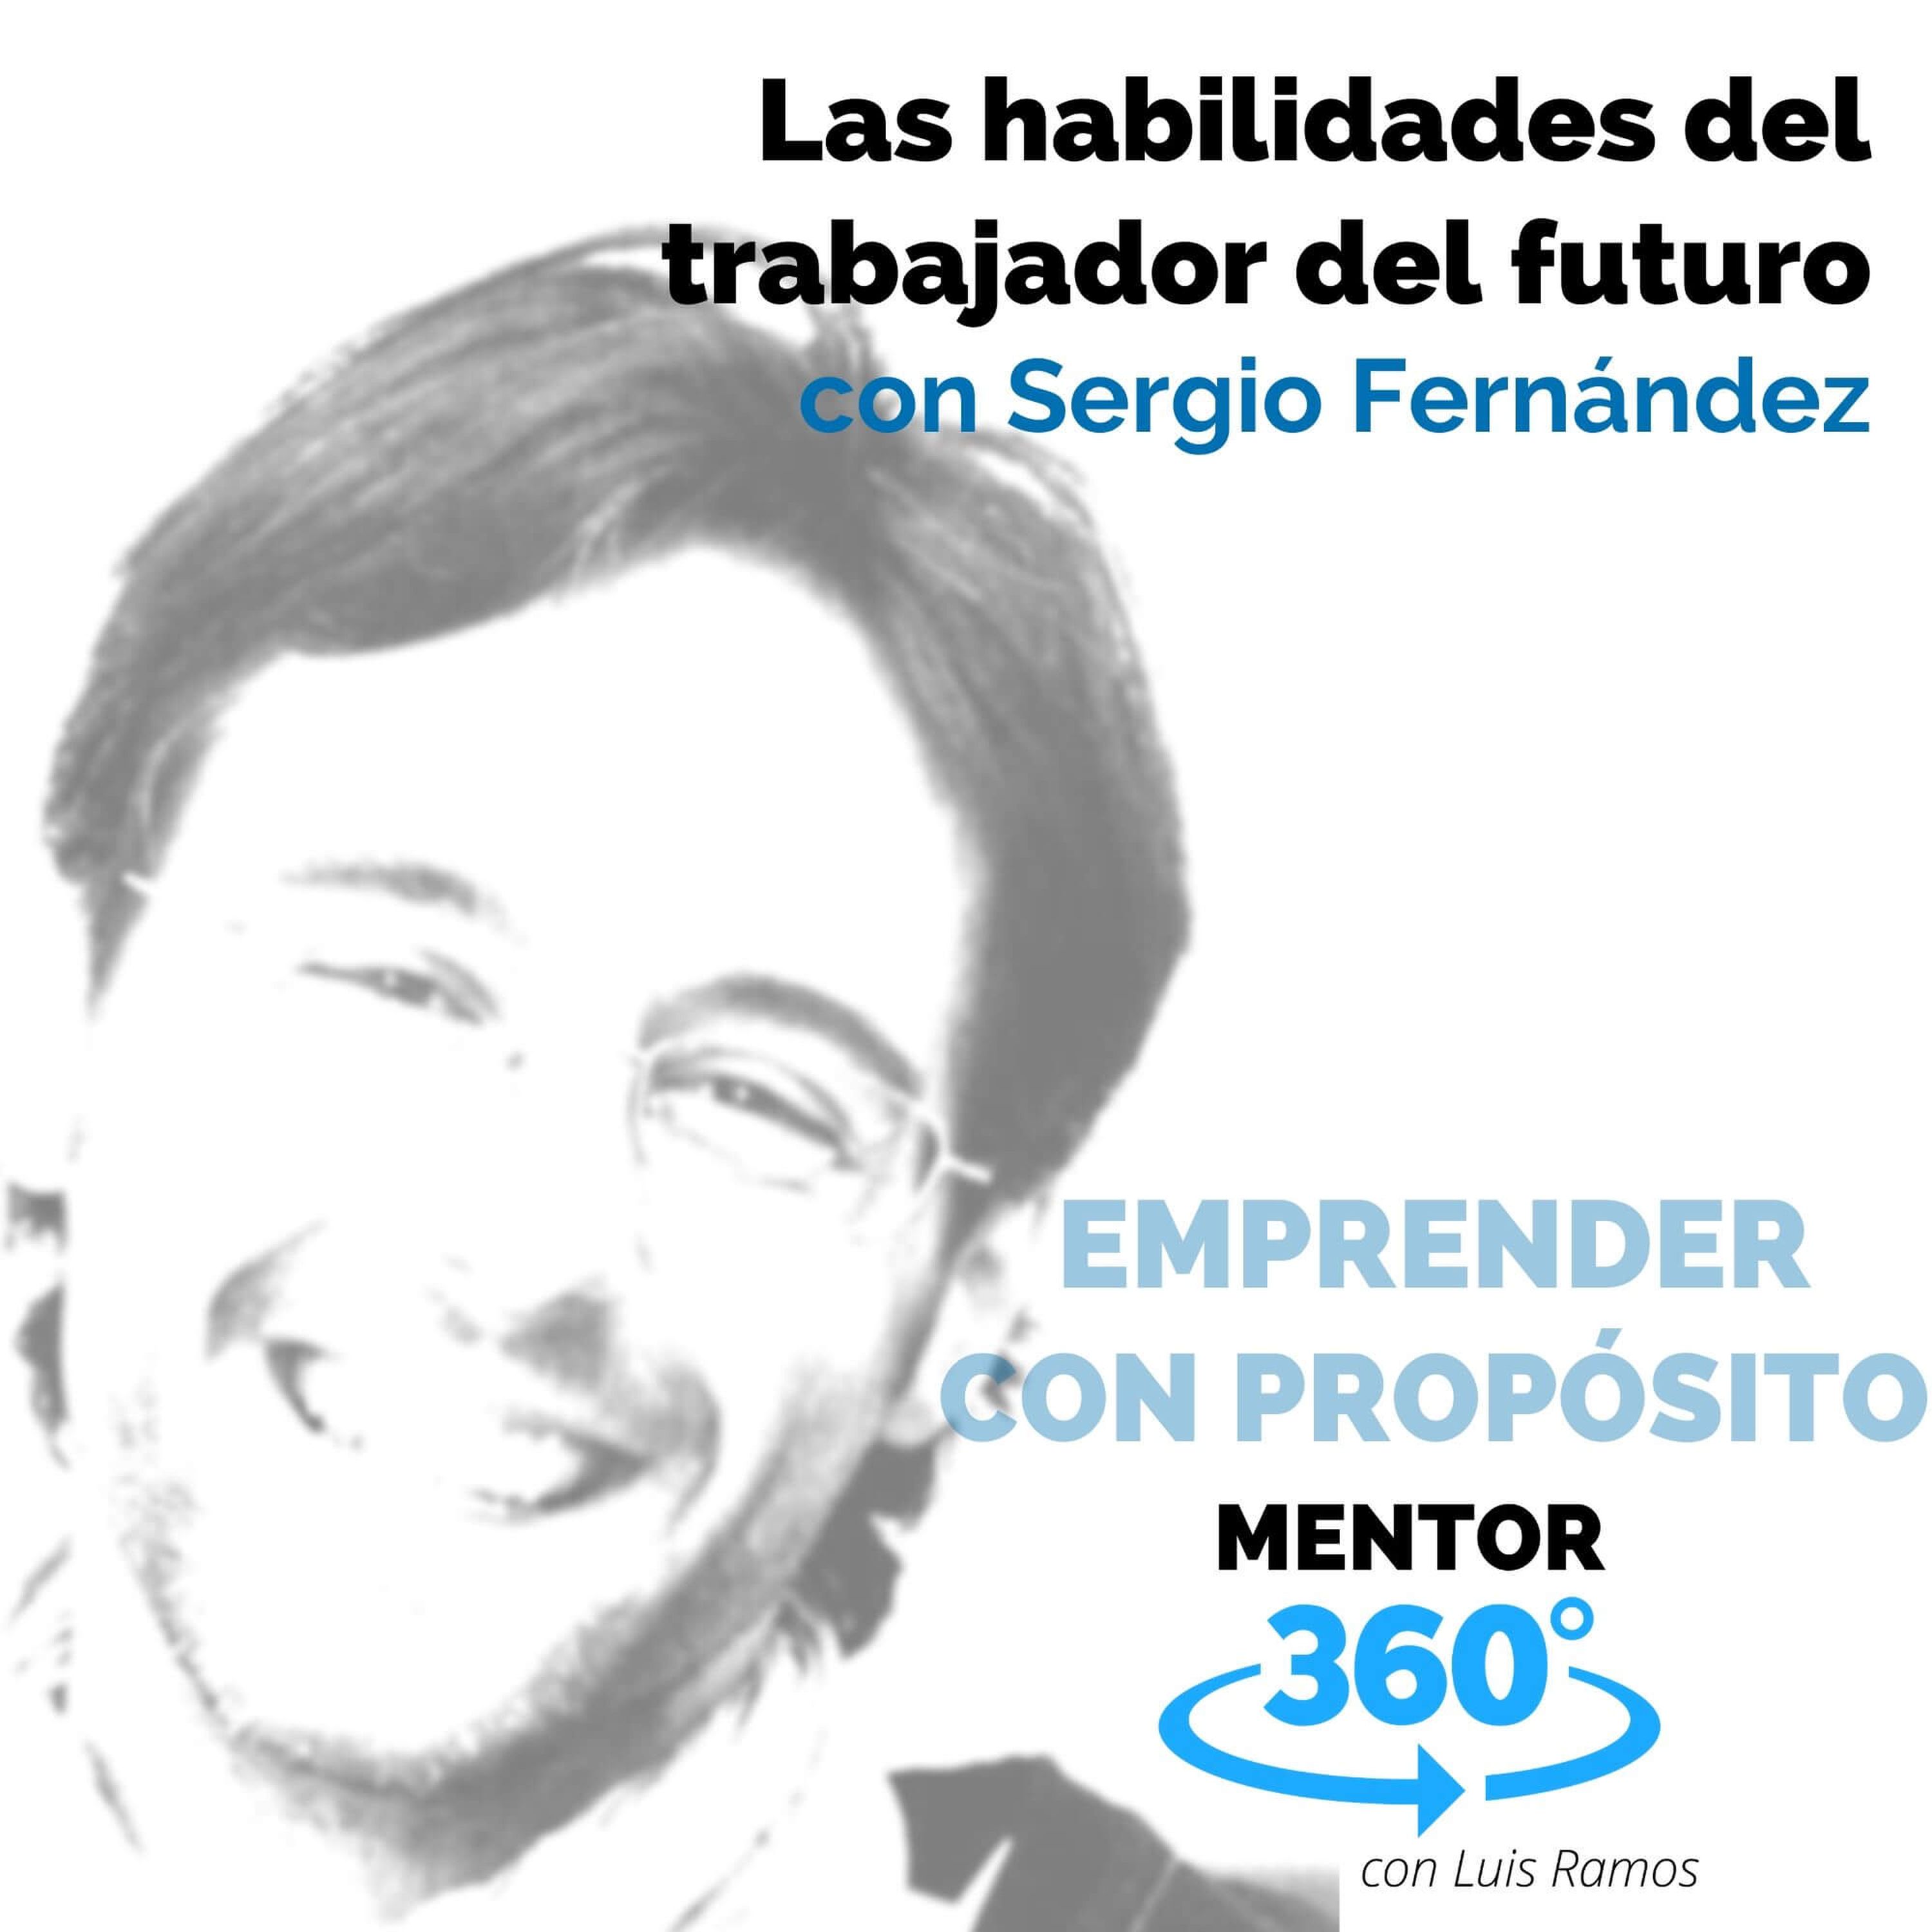 Las habilidades del trabajador del futuro, con Sergio Fernández - EMPRENDER CON PROPÓSITO